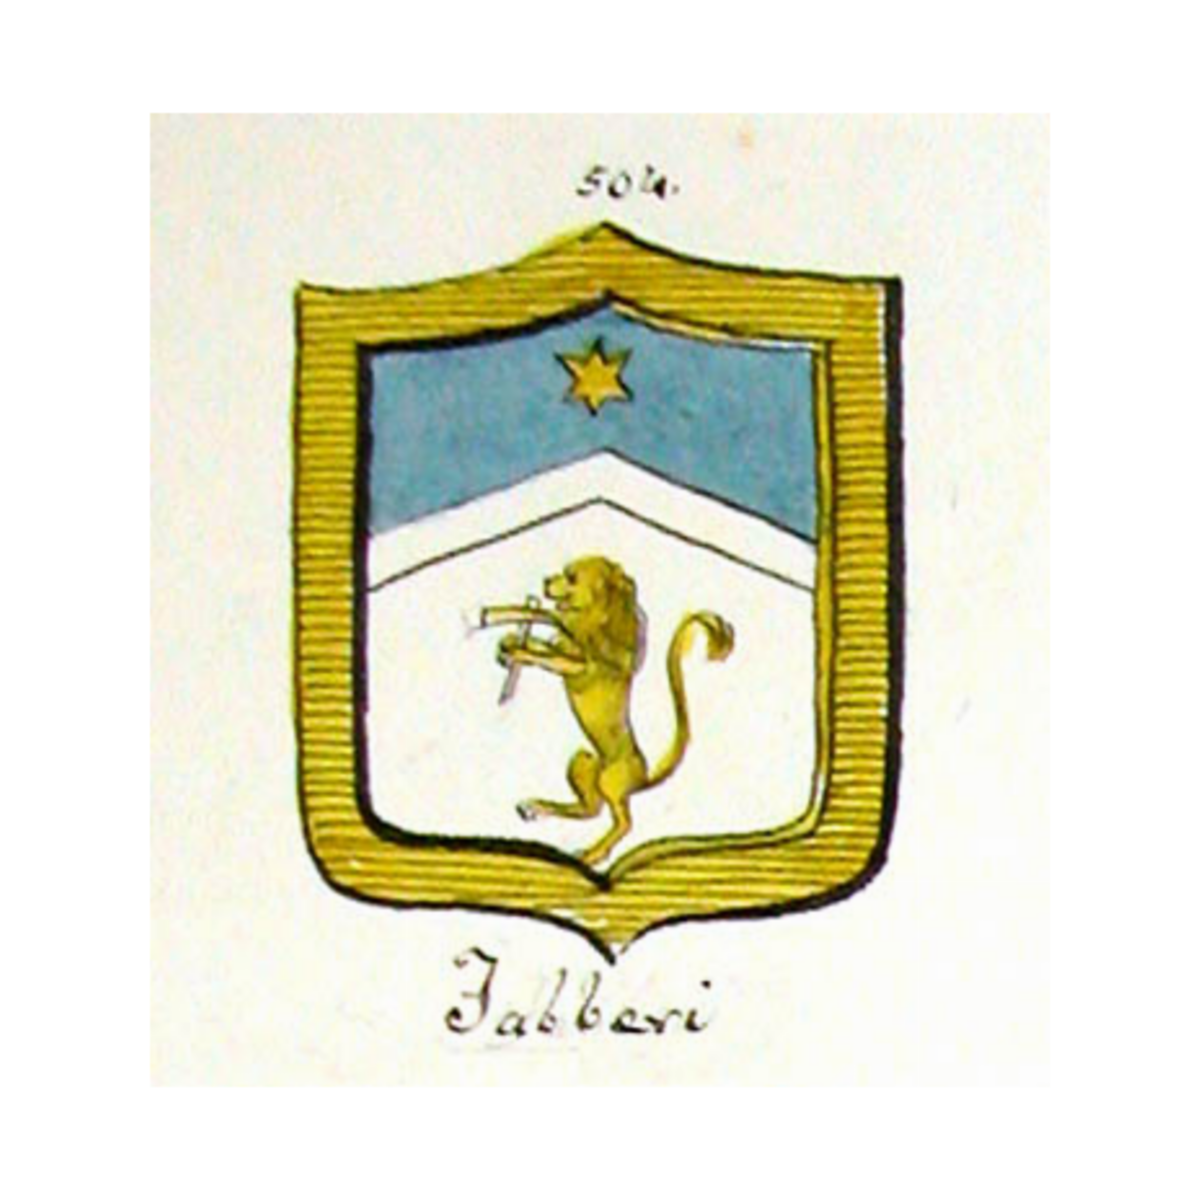 Wappen der FamilieFabberi, Fabberi